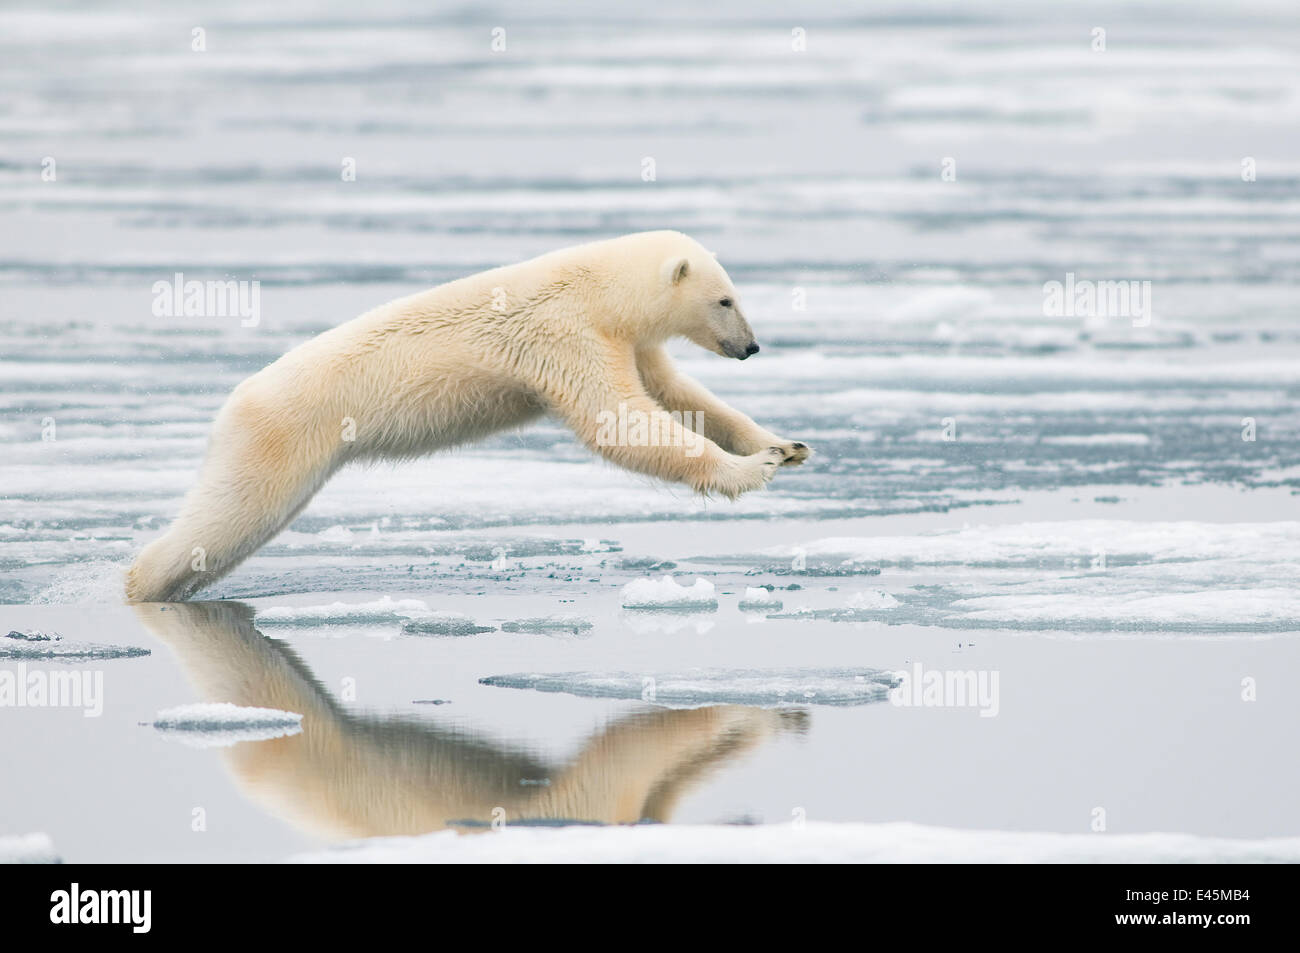 L'ours polaire (Ursus maritimus) sow sautant pendant la chasse au phoques  sur les glaces de mer, au large de la côte de Svalbard, Norvège Photo Stock  - Alamy